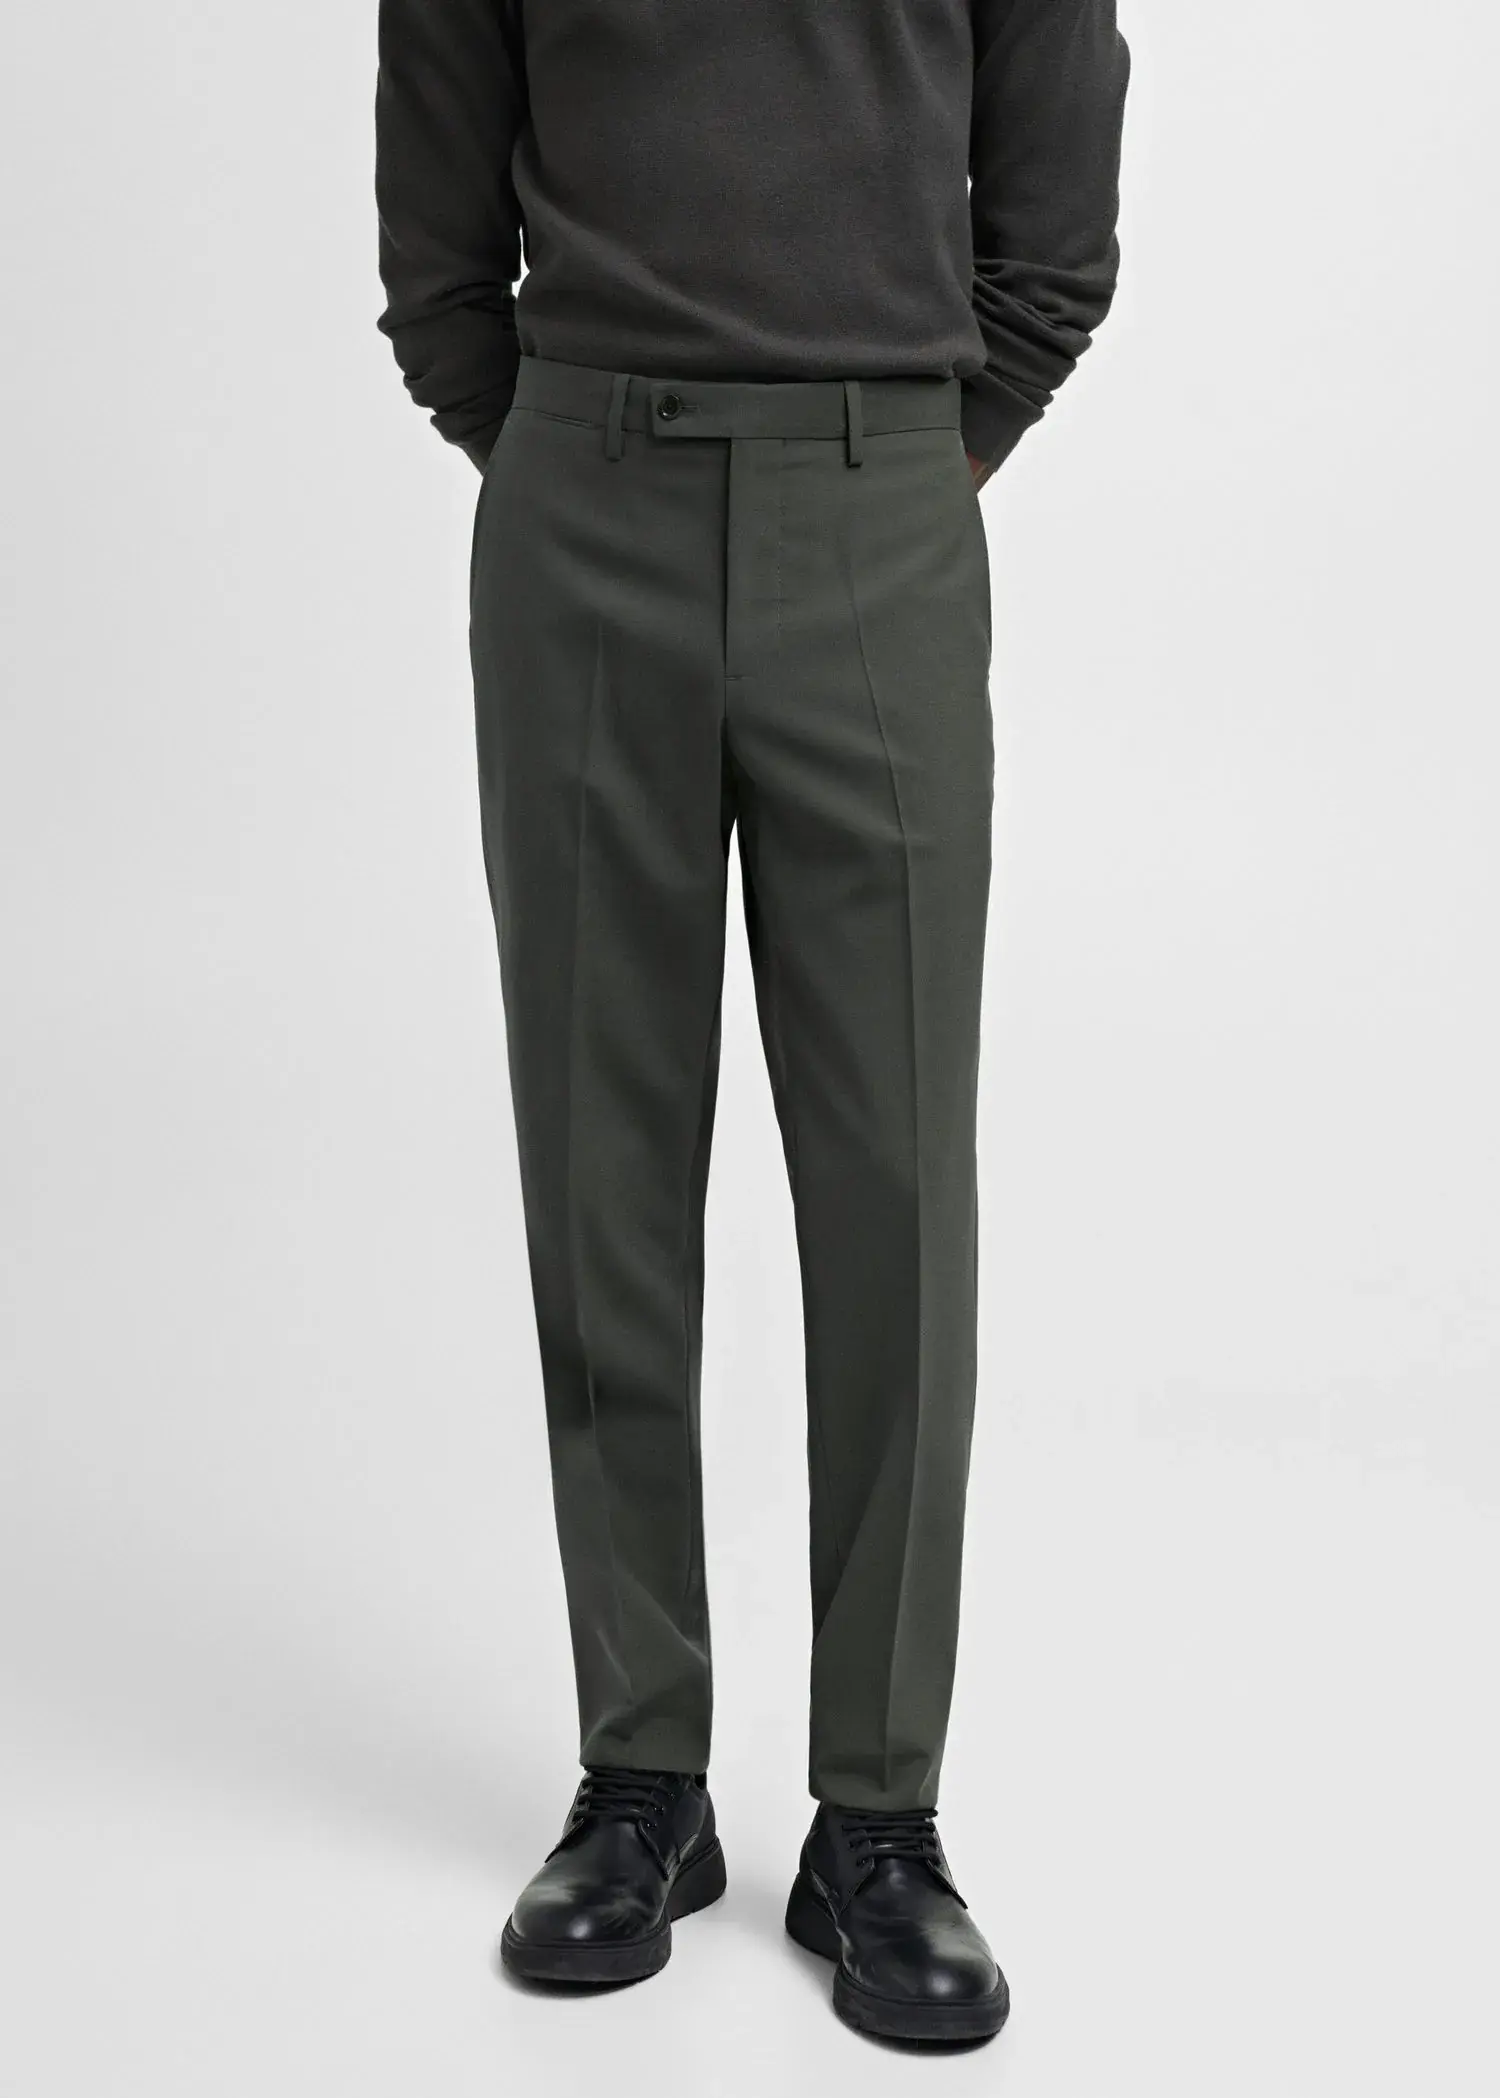 Mango Slim fit wool suit pants. 2